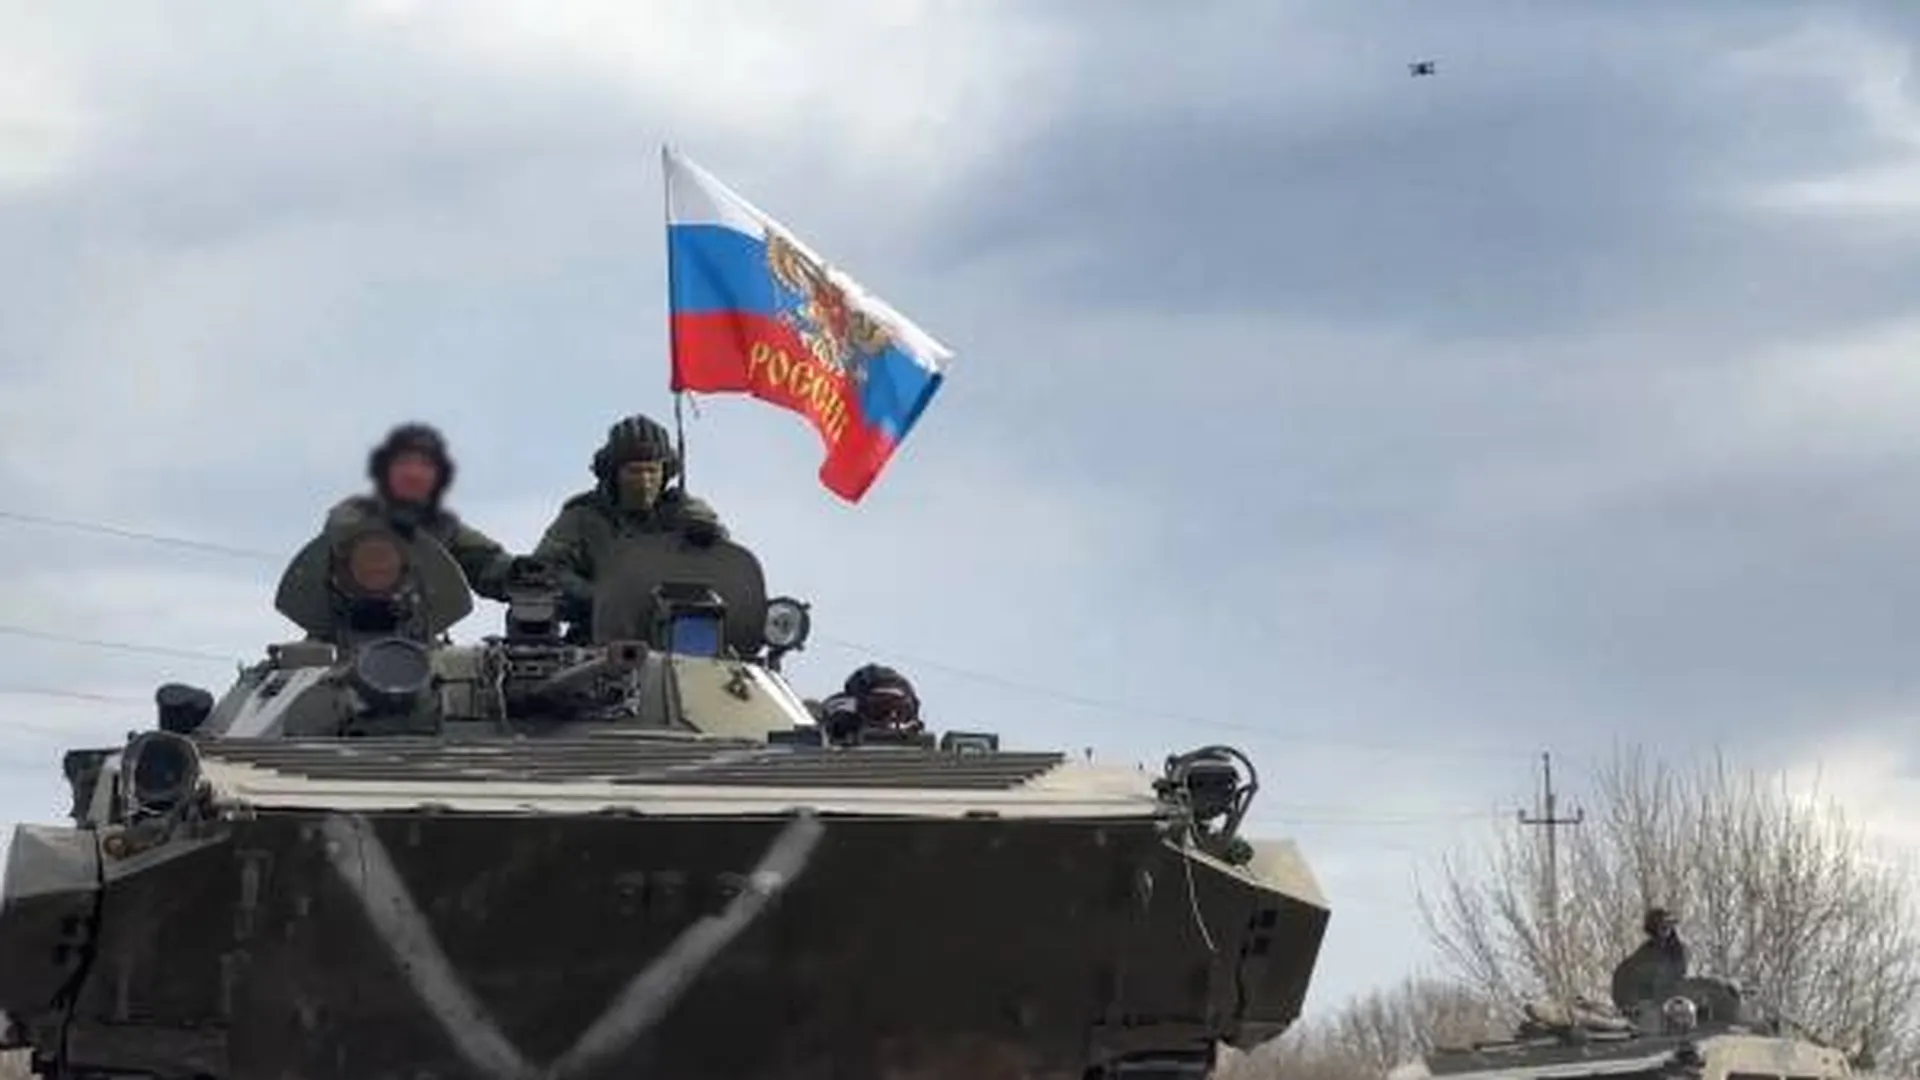 Российские ВКС разнесли авиатехнику ВВС Украины на аэродроме под Николаевом